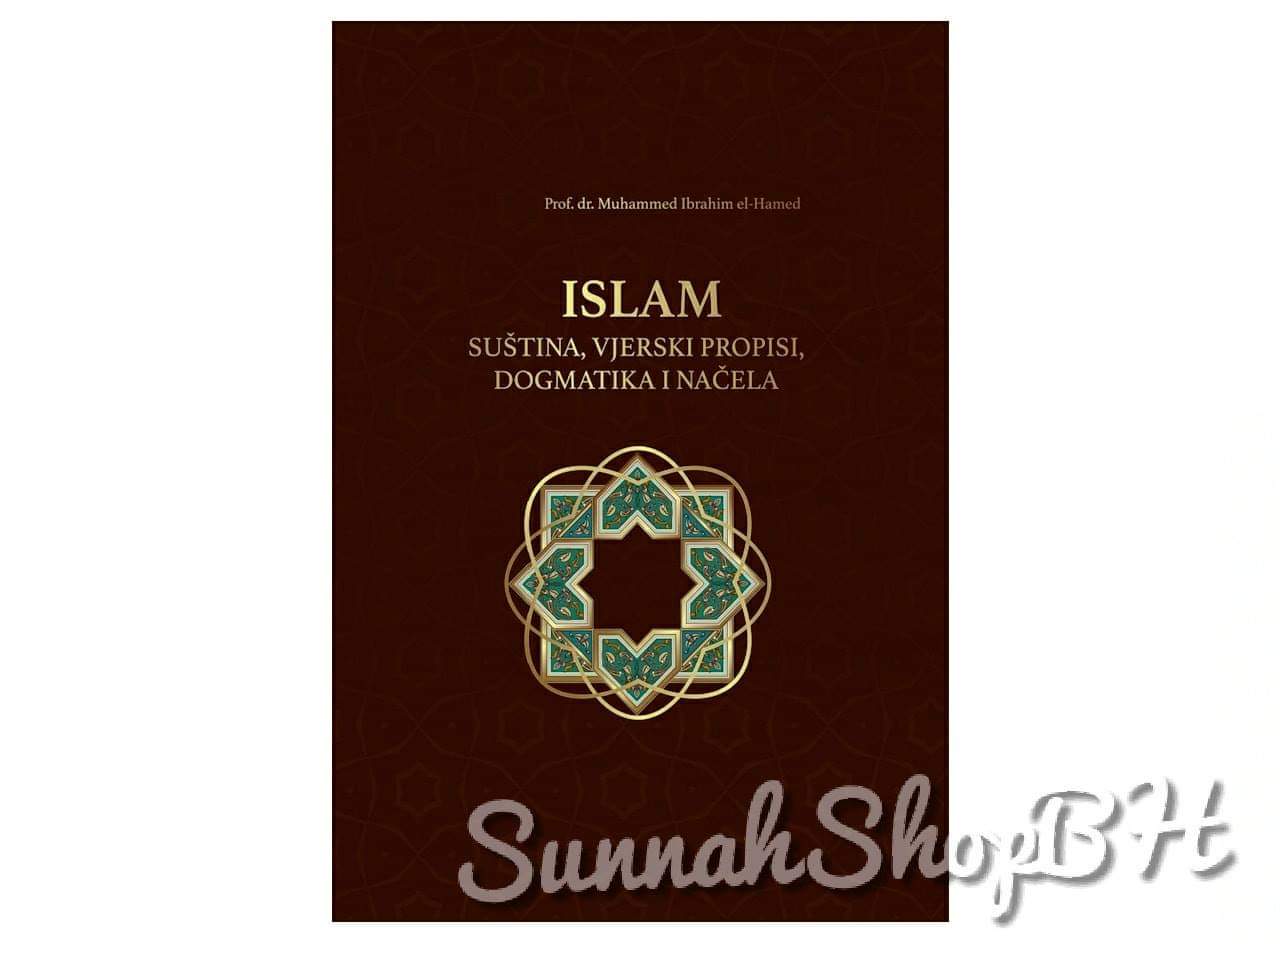 Islamske knjige - Islam - suština, vjerski propisi, dogmatika i načela